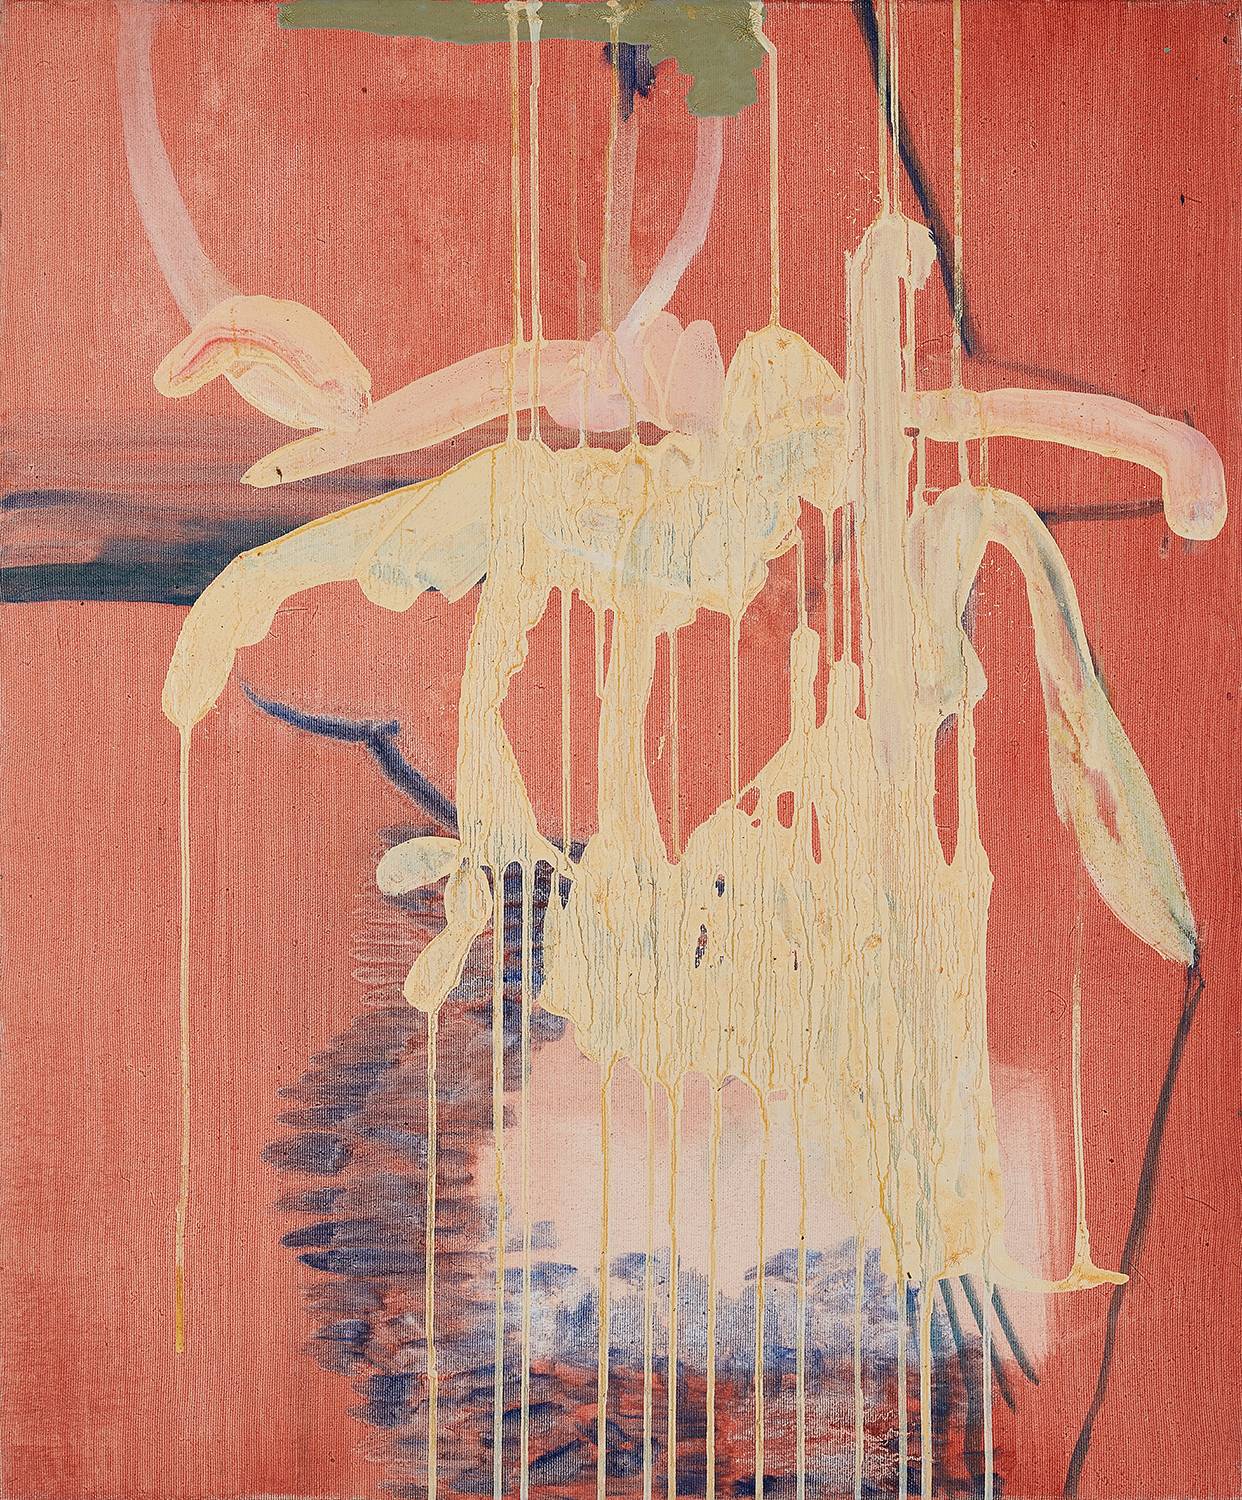 Dorota Buczkowska, Bez tytułu, z cyklu Thus Spoke the Plant, 2022, olej na płótnie, 60 x 50 cm, dzięki uprzejmości artystki i Galerii Jednostka